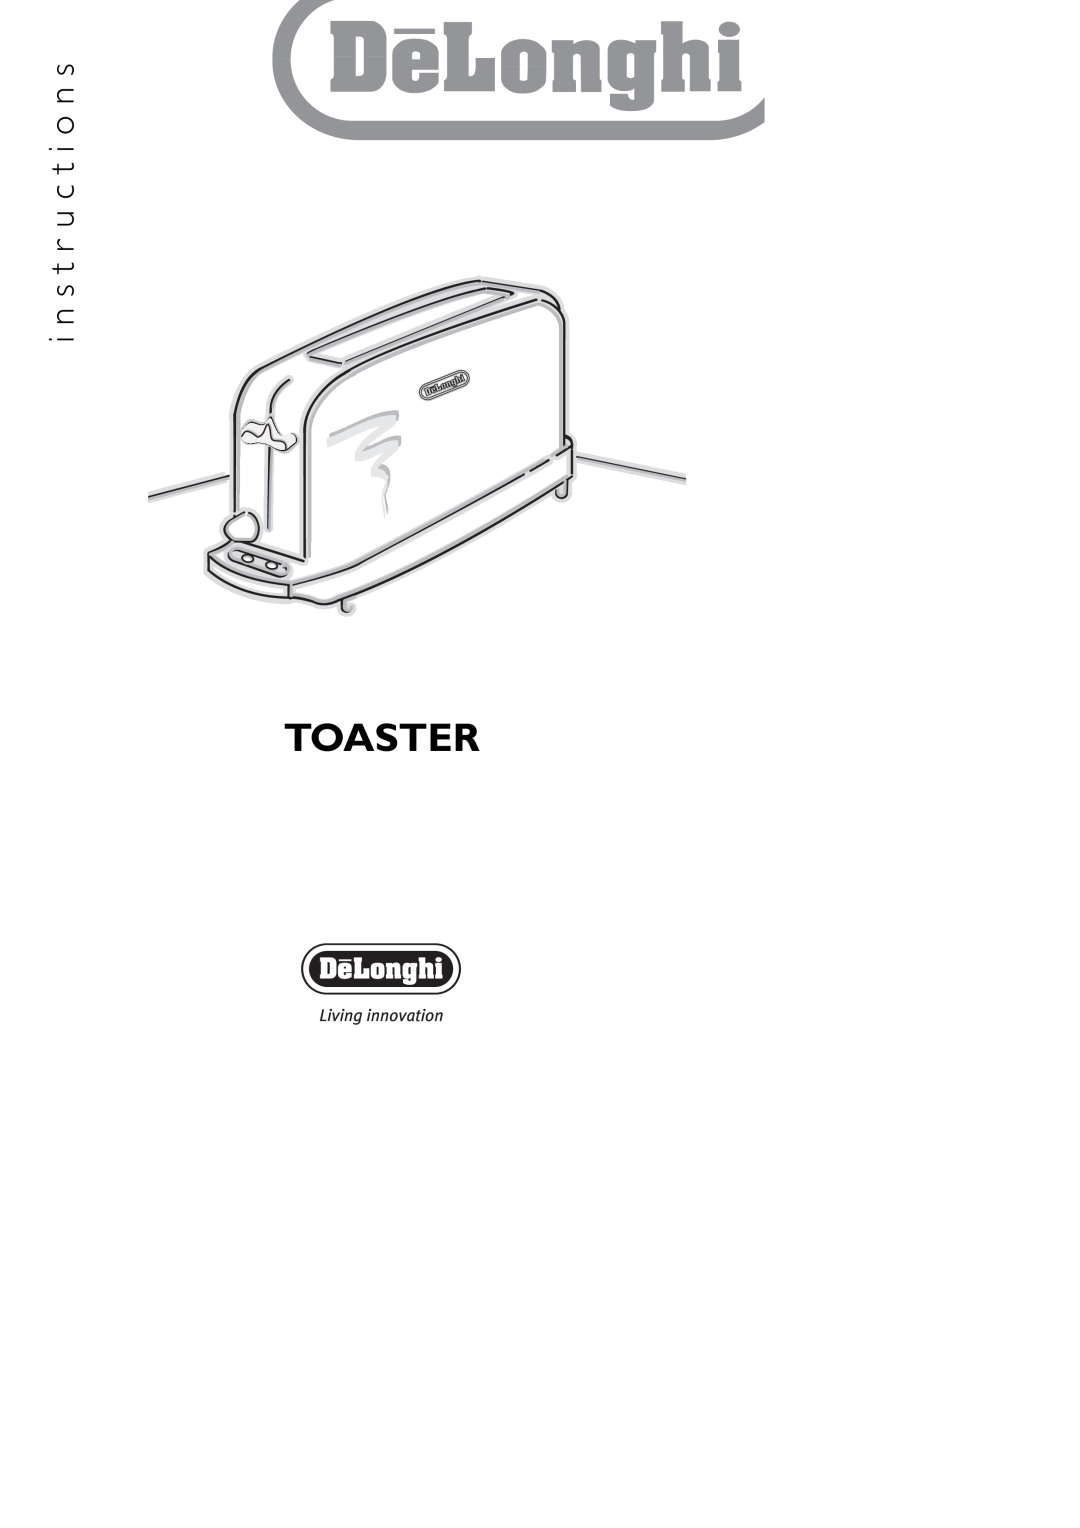 DeLonghi CBT201 manual Toaster, i n s t r u c t i o n s 